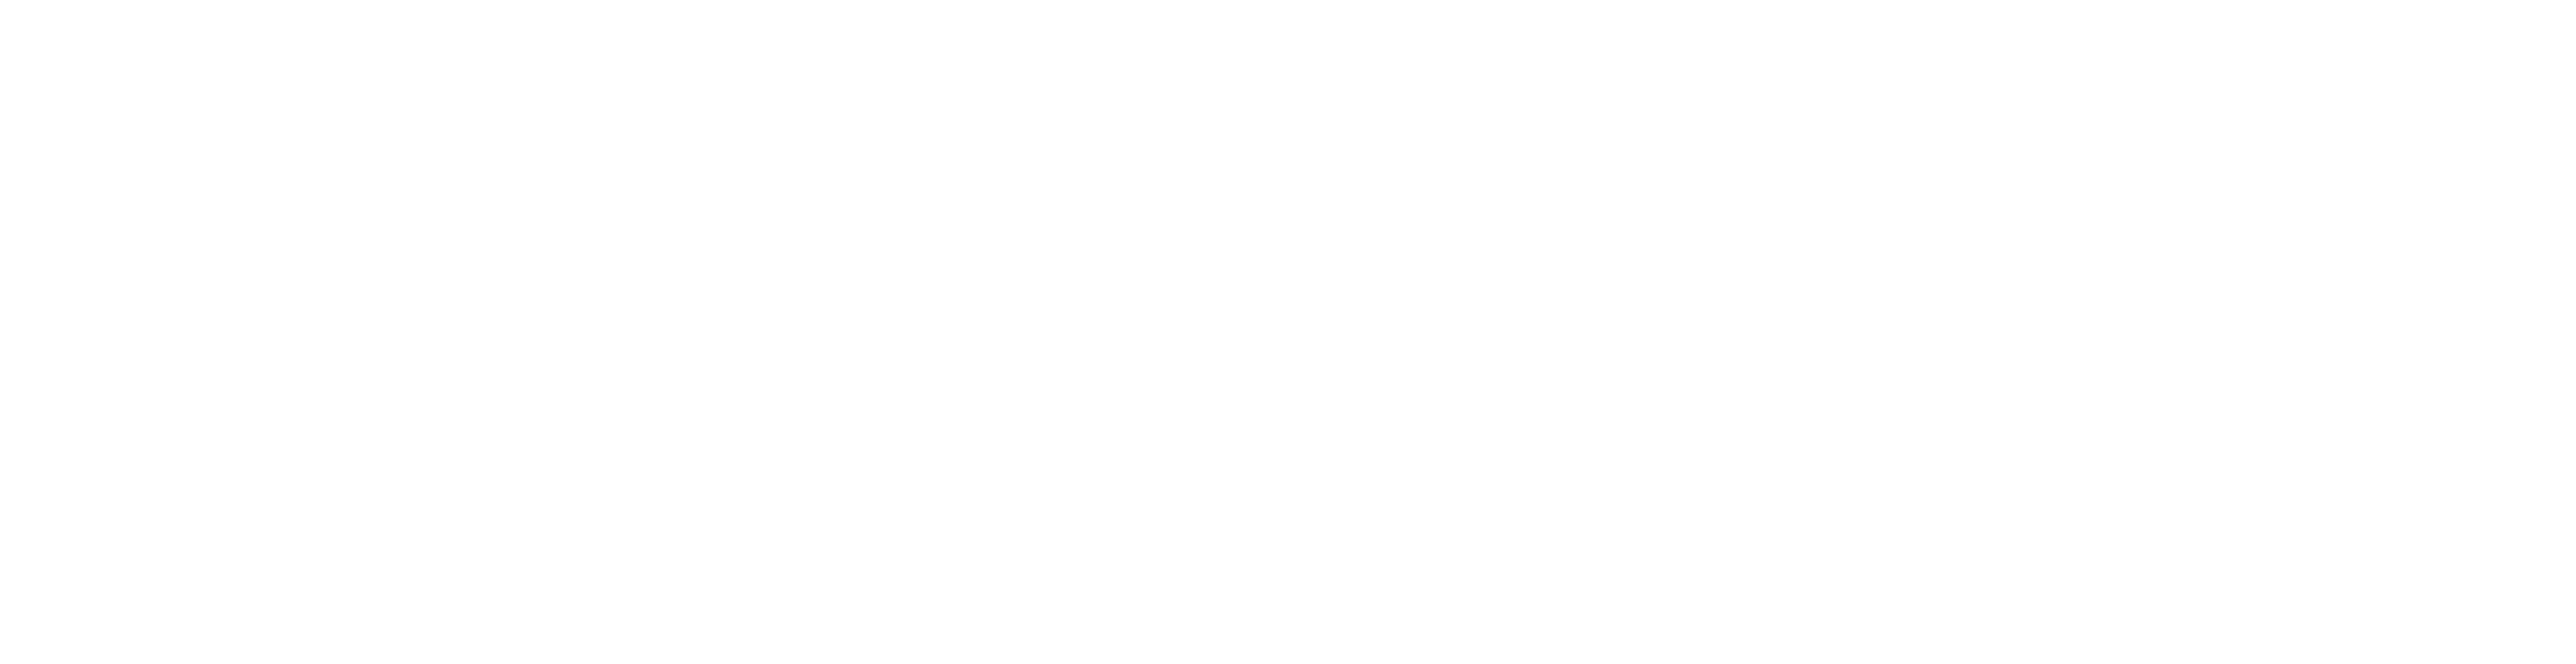 VicScreen